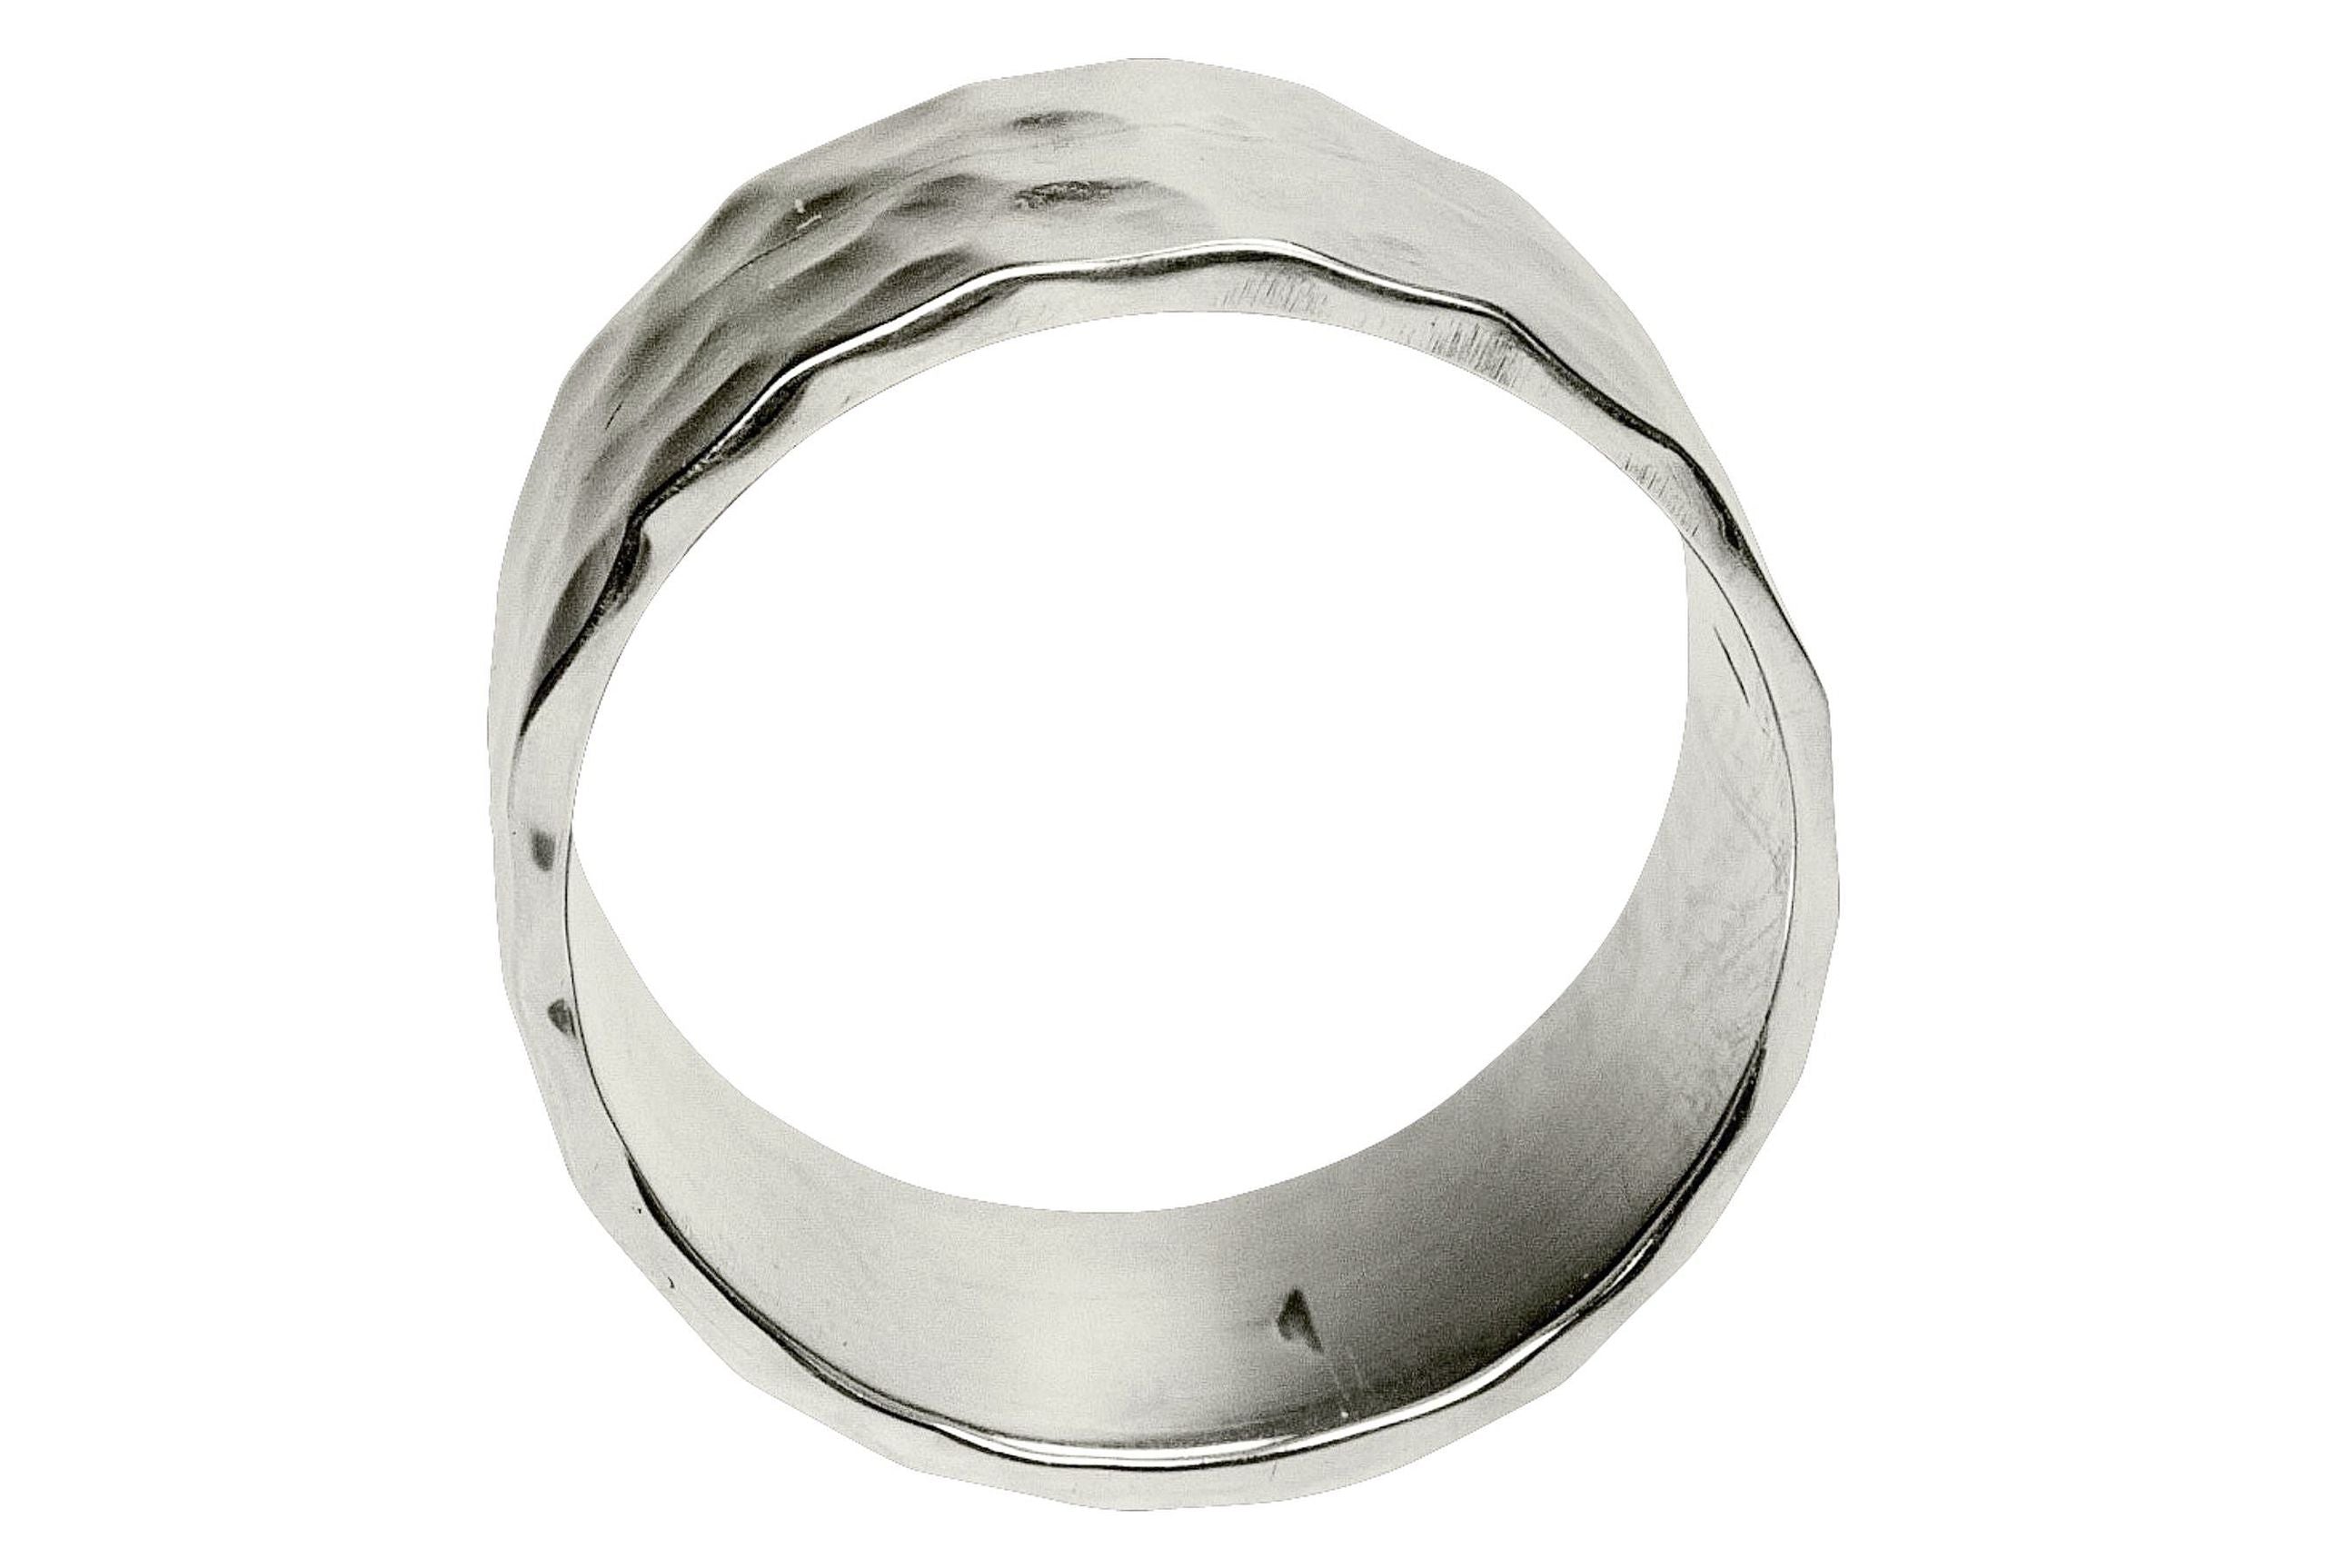 Geschmiedeter klassischer Bandring aus Silber für Damen und Herren mit glänzend gehämmerter Oberfläche.